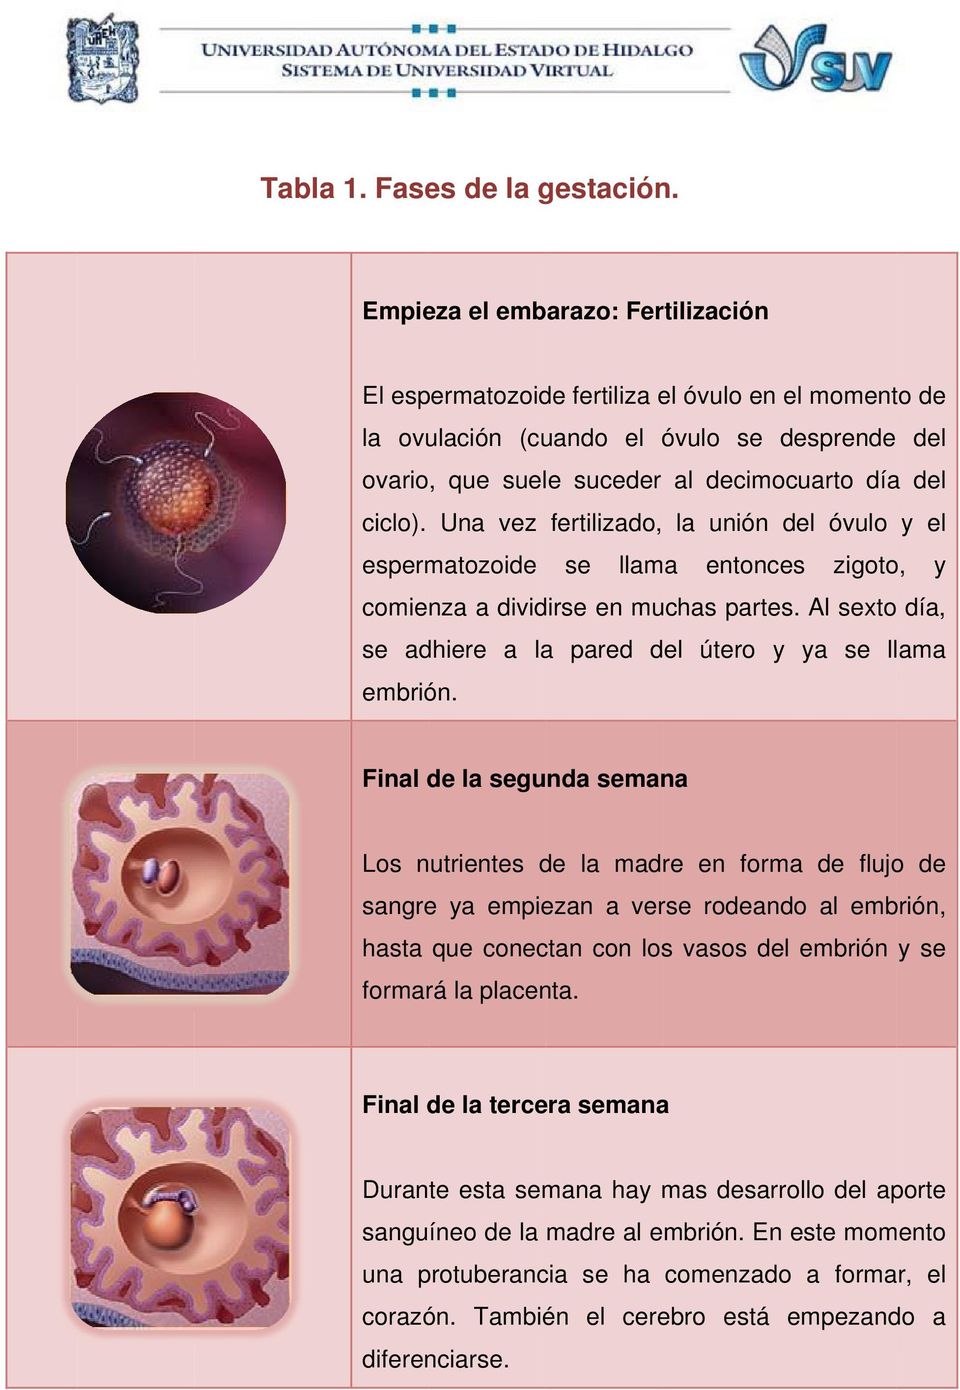 Una vez fertilizado, la unión del óvulo y el espermatozoide se llama entonces zigoto, y comienza a dividirse en muchas partes. Al sexto día, se adhiere a la pared del útero y ya se llama embrión.